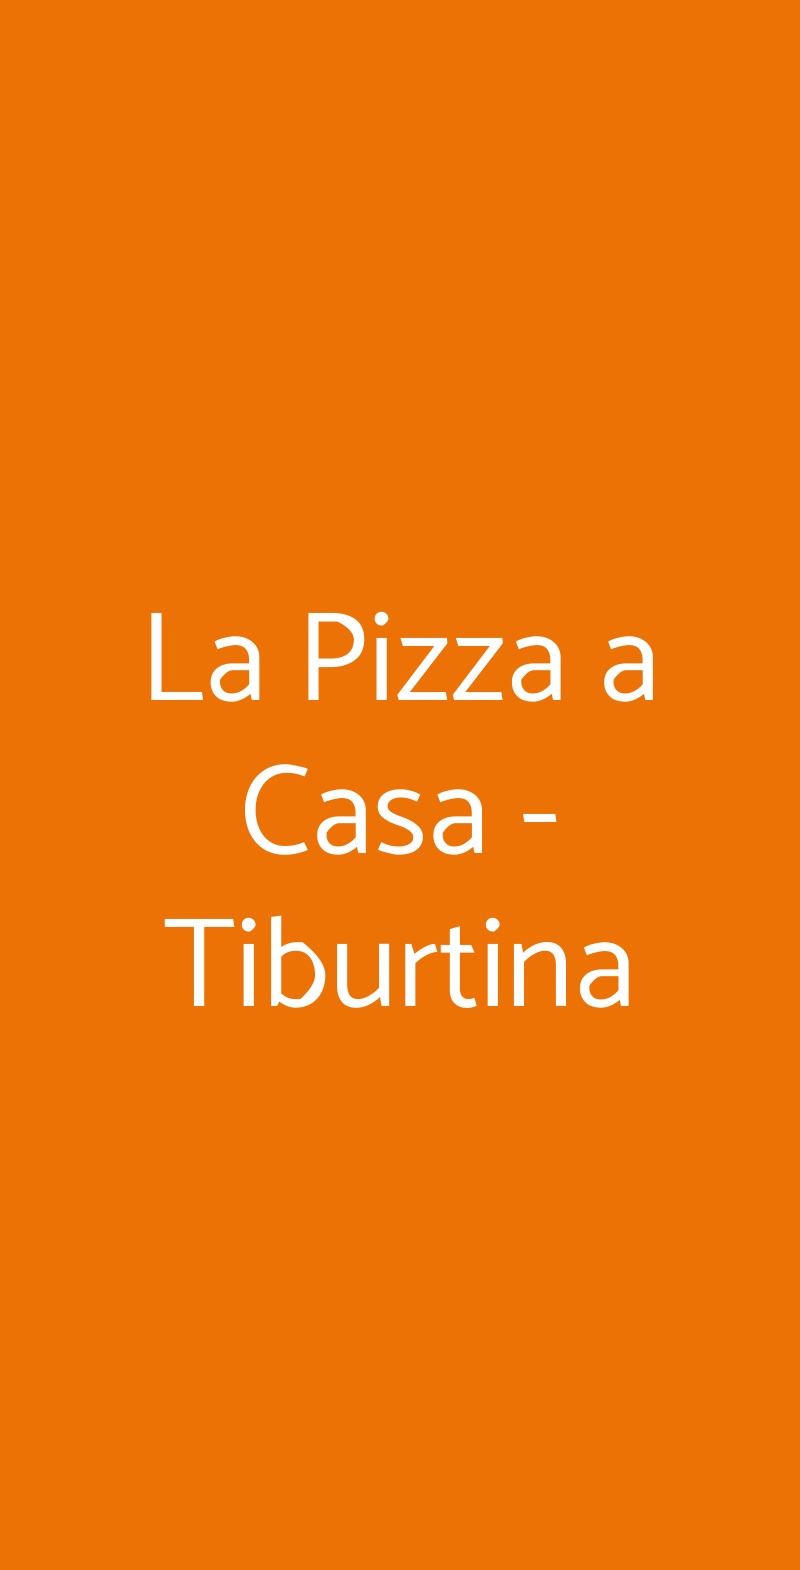 La Pizza a Casa - Tiburtina Roma menù 1 pagina